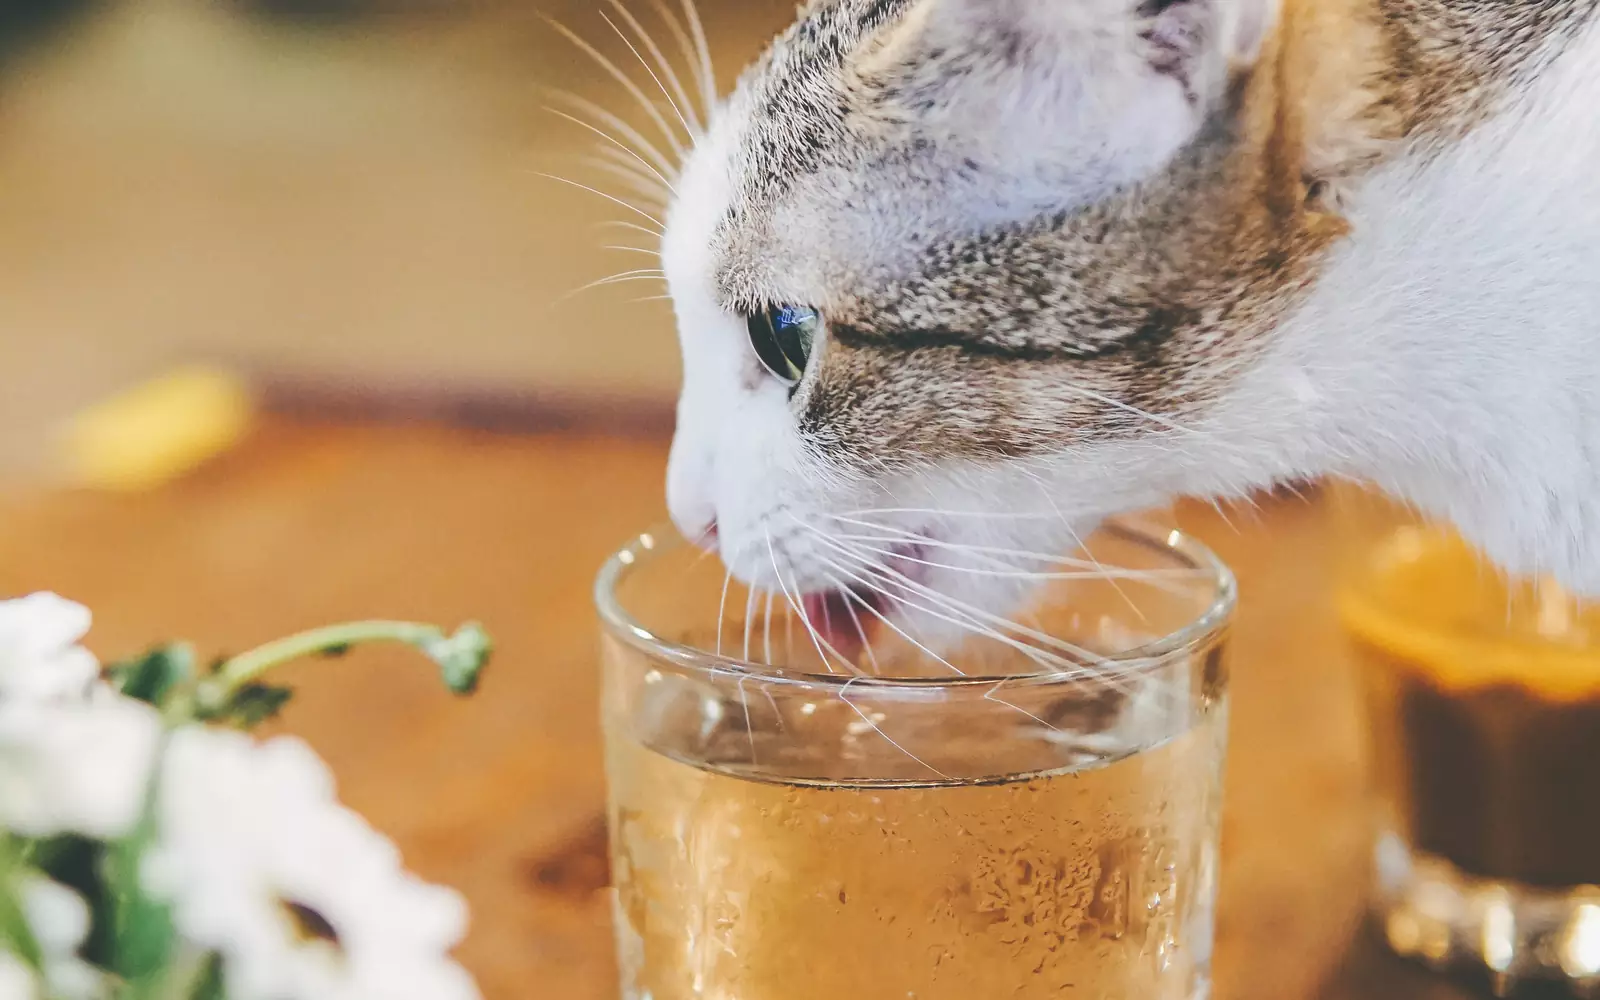 Если кошка редко пьет воду, расставьте кружки и стаканы с водой в разных частях дома: на столах, подоконниках и полках. Некоторые кошки охотнее пьют воду из посуды хозяина, потому что считают ее безопасной.